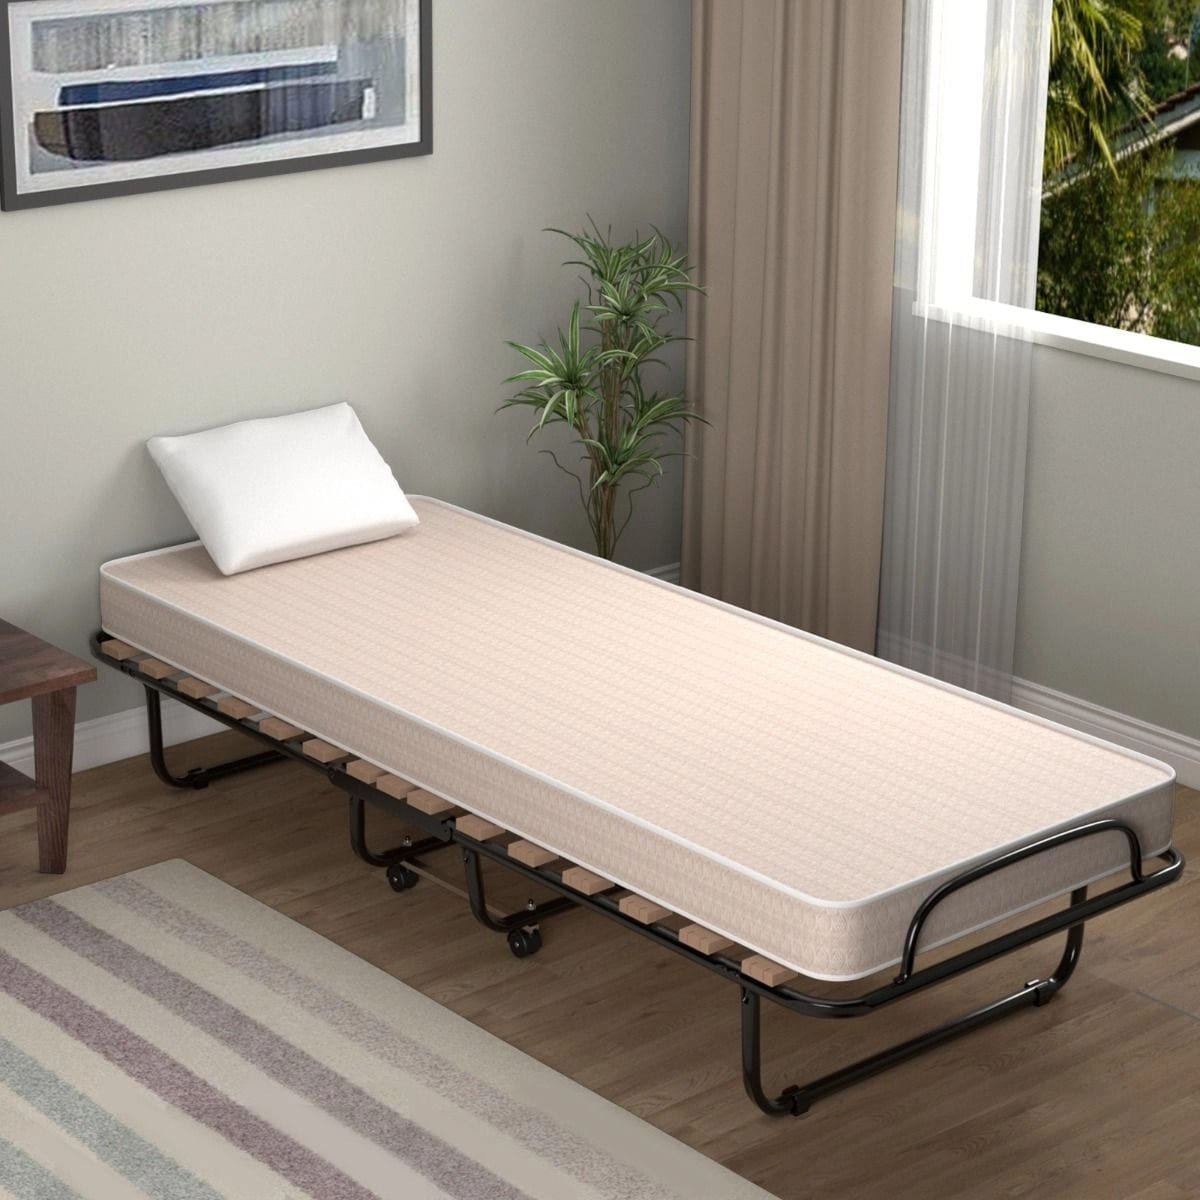 Łóżko składane z grubym materacem z pianki Memory 190 x 80 x 33 cm COSTWAY